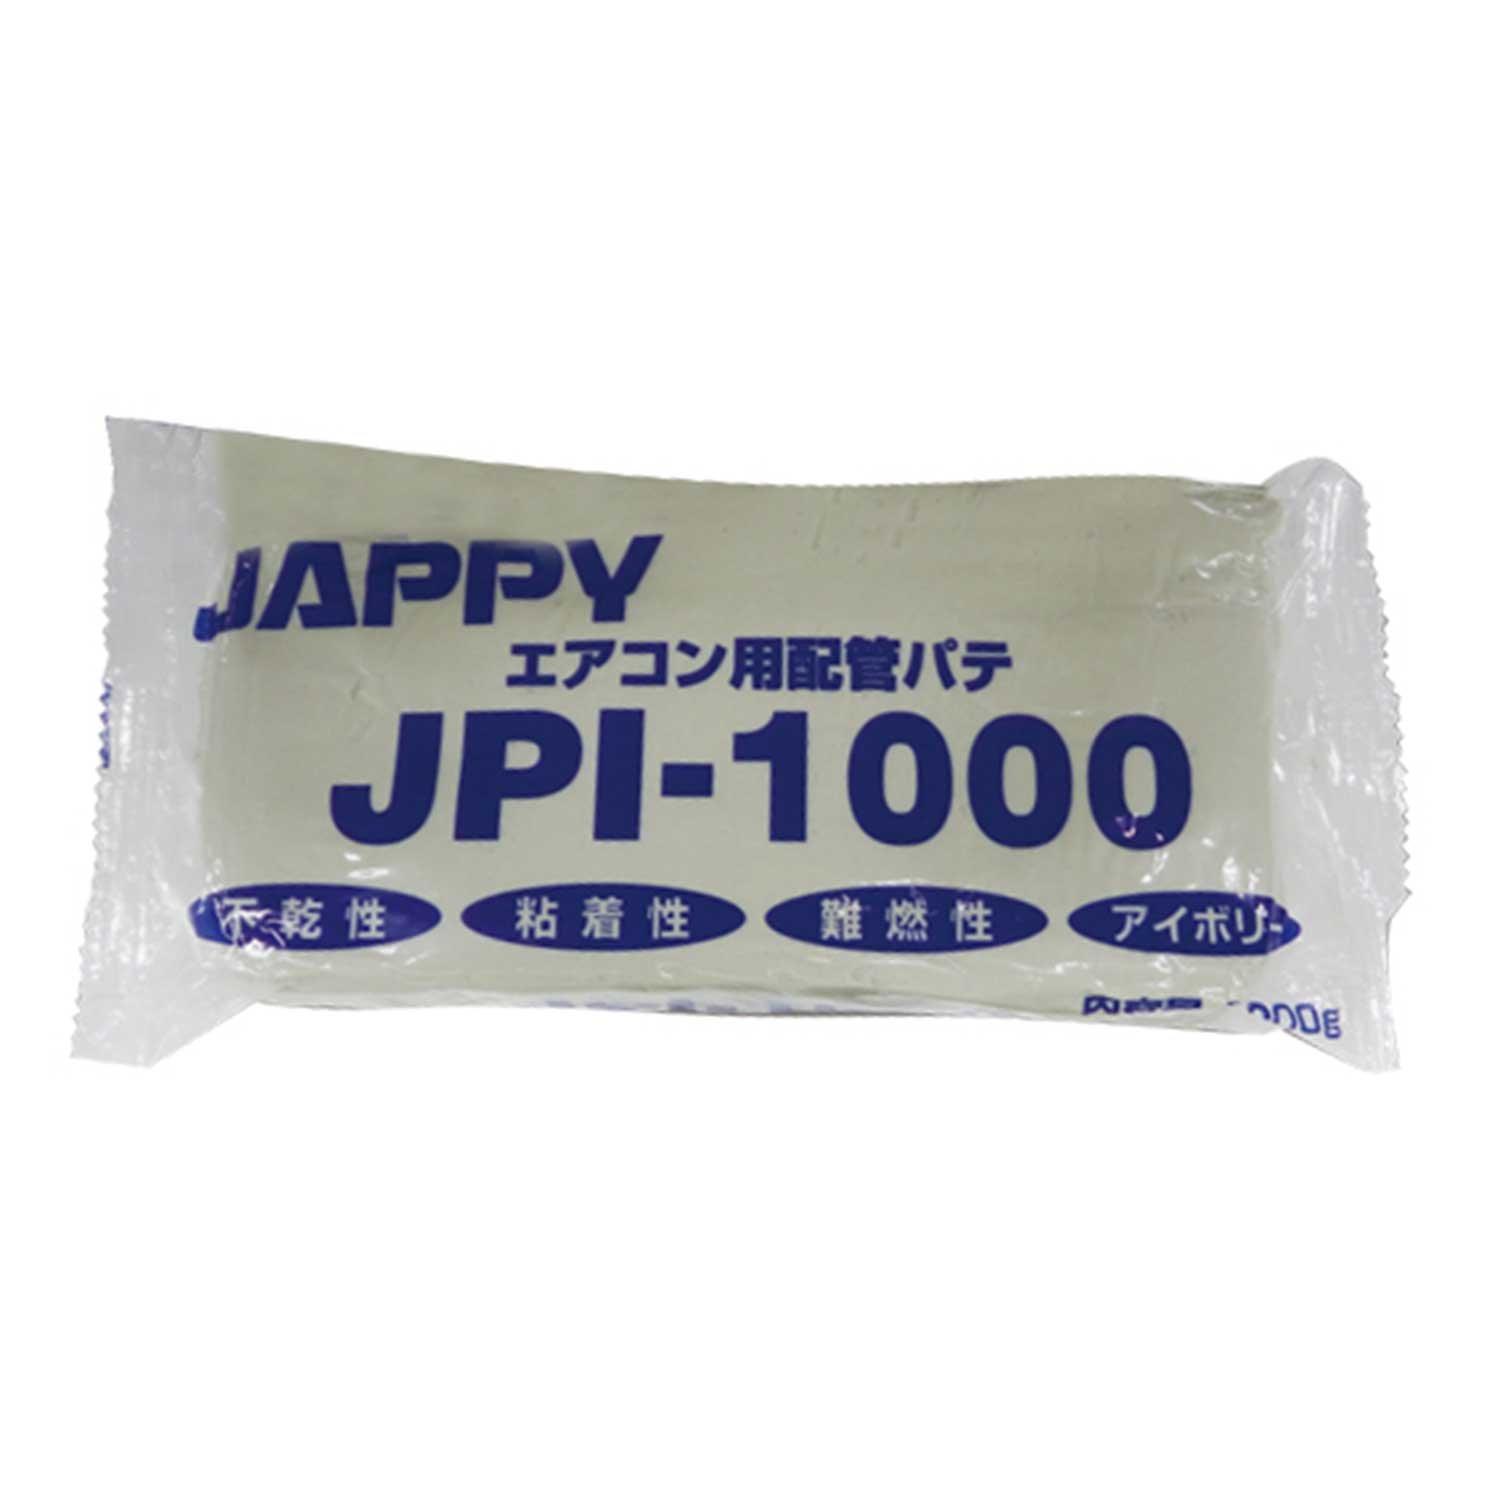 JPI-1000 